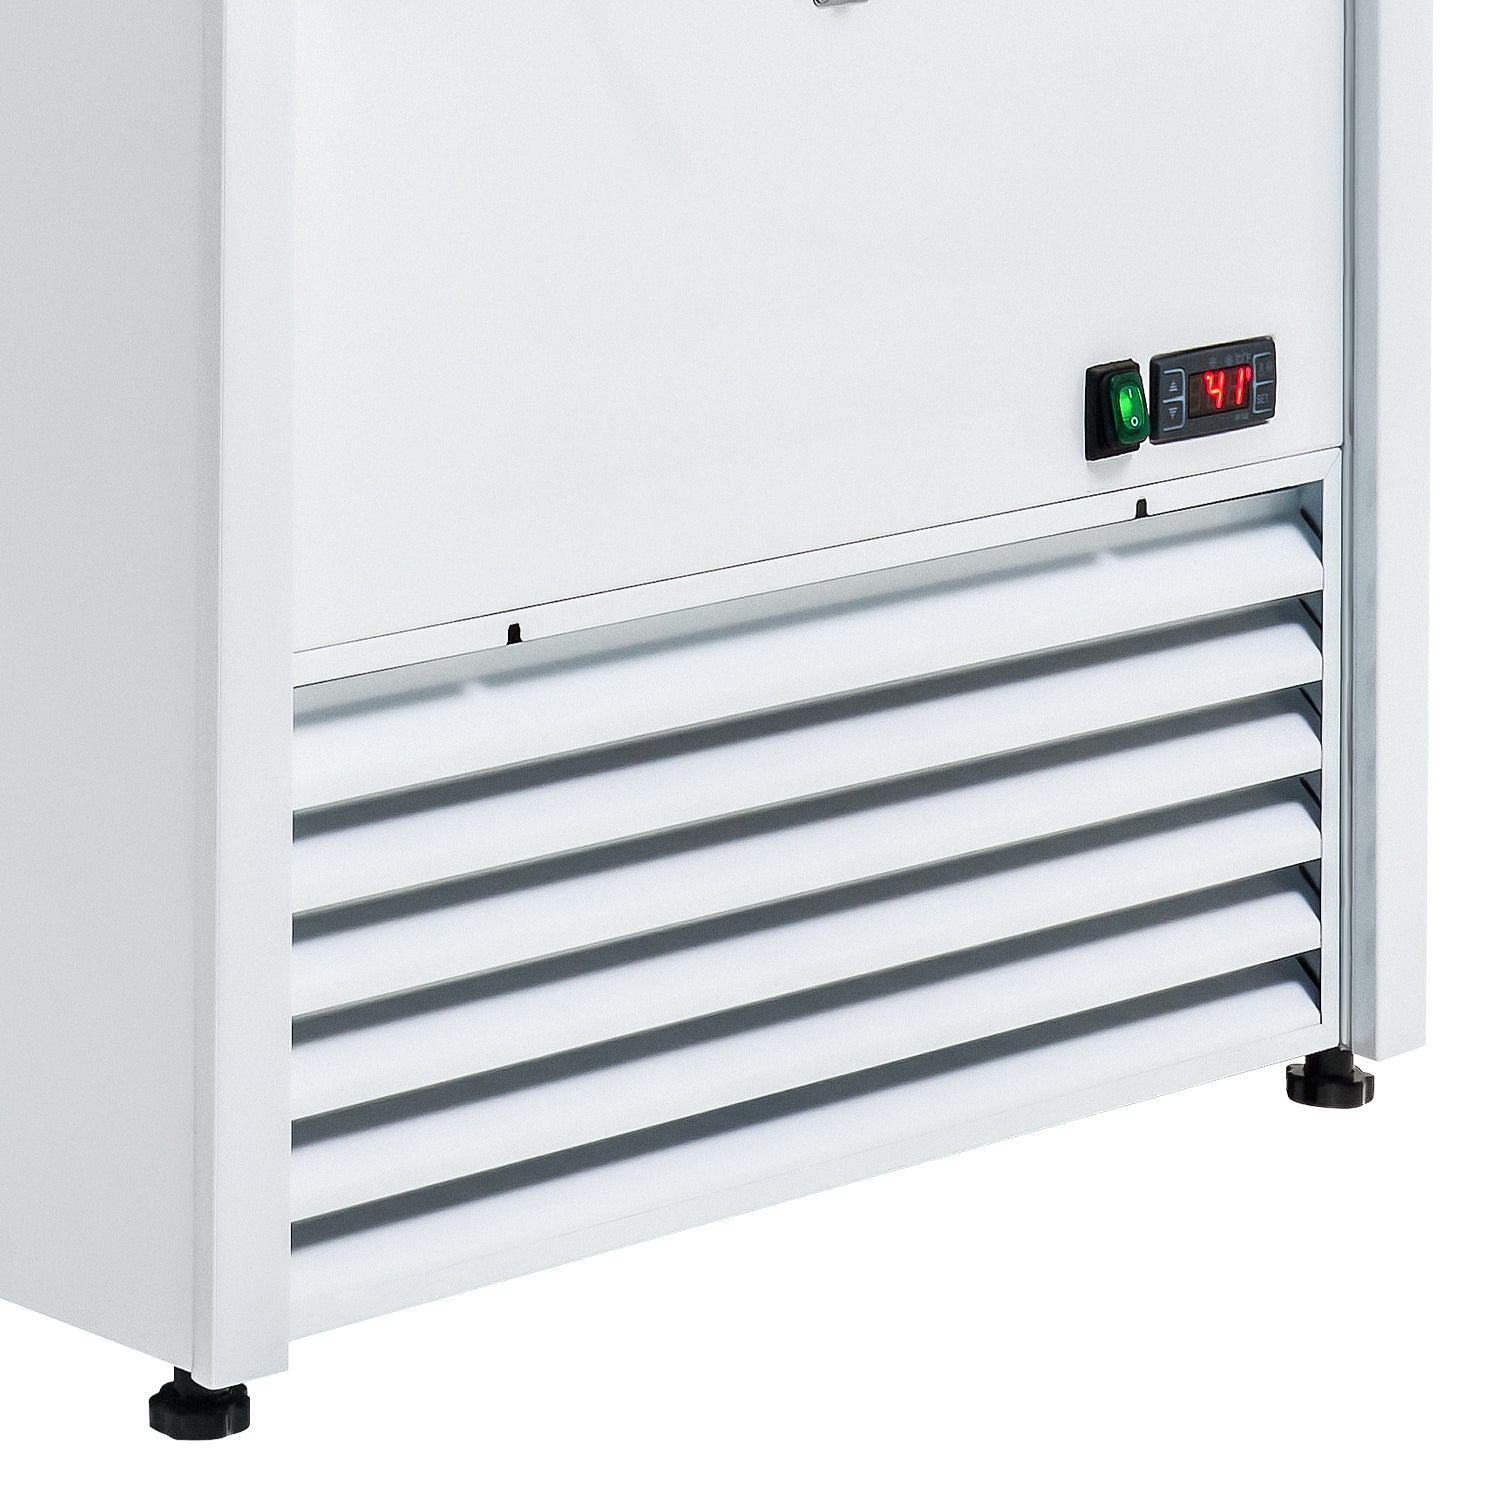 Wilprep 39 inch open air refrigerator system